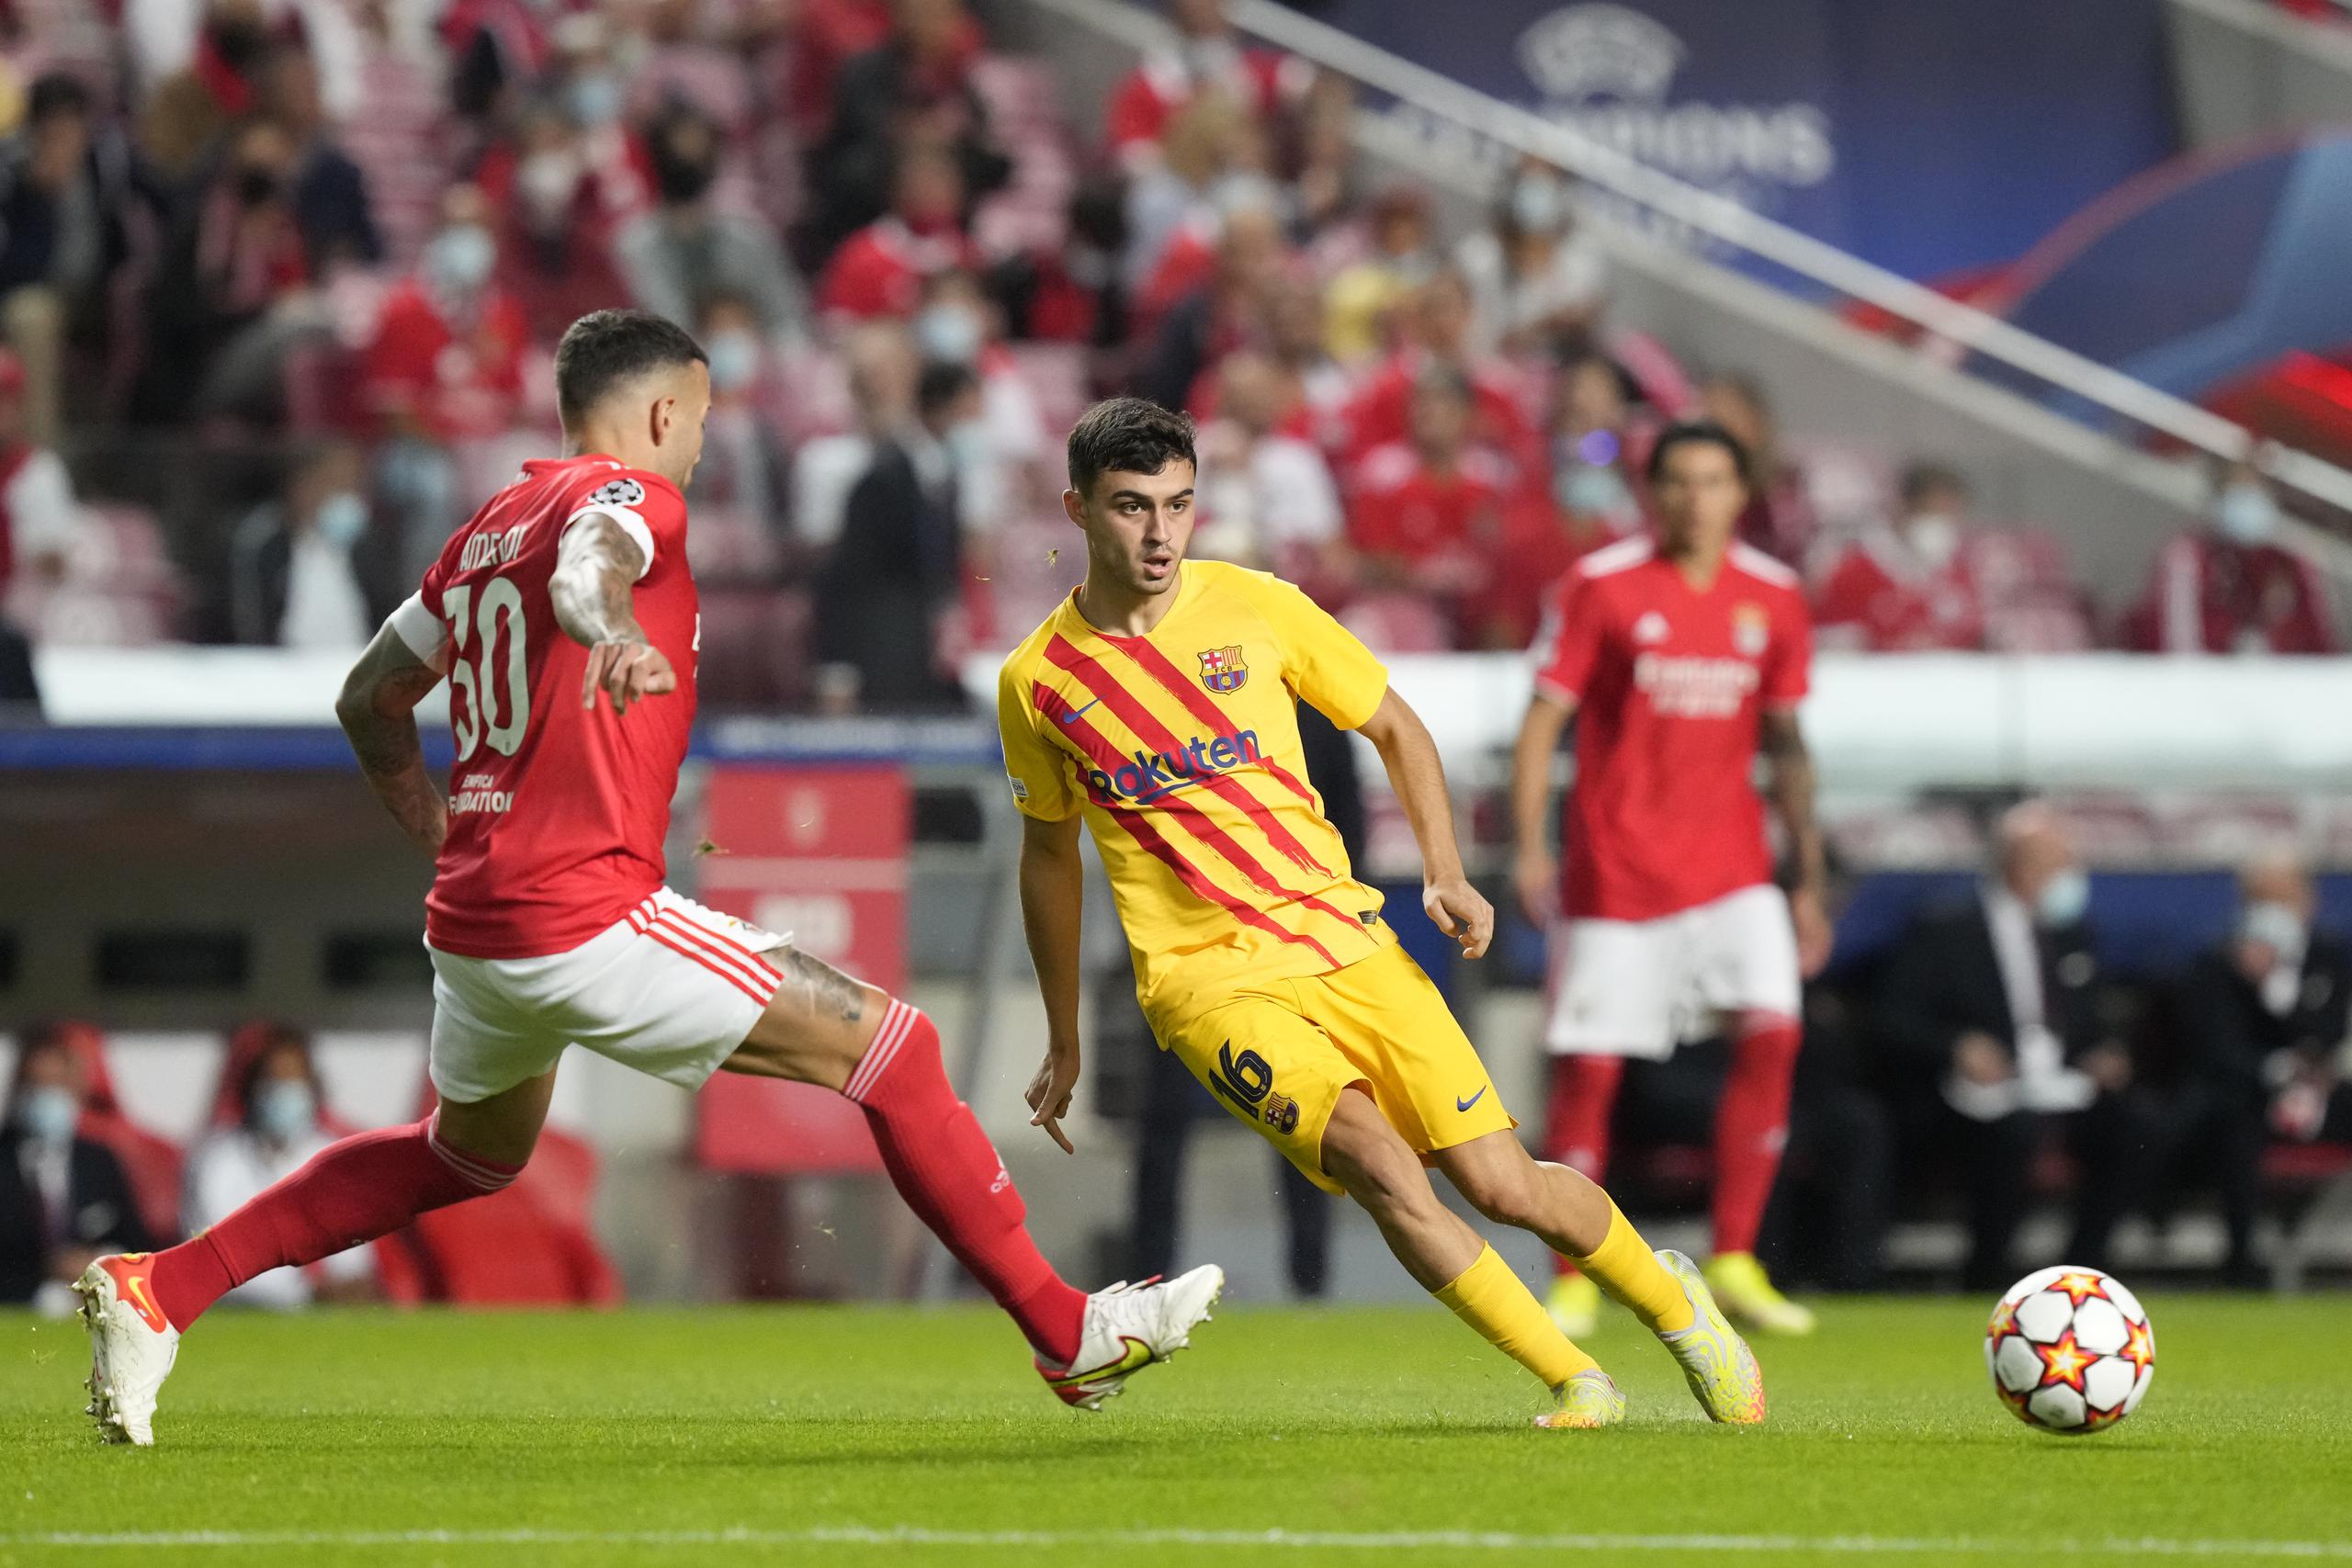 El volante Pedri (centro) del Barcelona pasa el balón ante la marca del zaguero Nicolás Otamendi del Benfica durante el partido de la Liga de Campeones, el miércoles 29 de septiembre de 2021, en Lisboa.